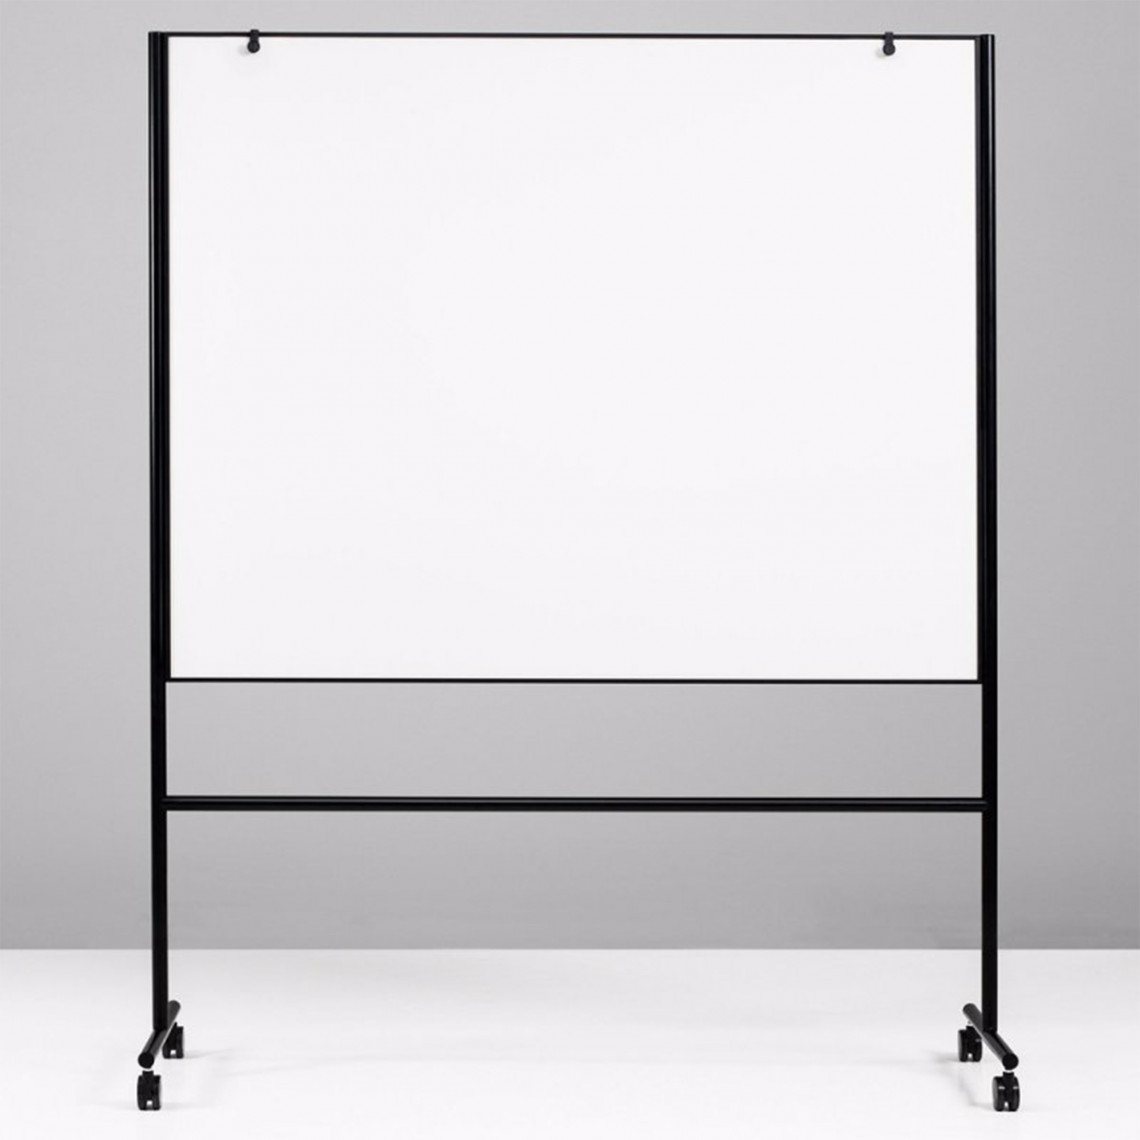 Tableau blanc mobile sur roulettes – 101,6 x 66 cm, tableau blanc